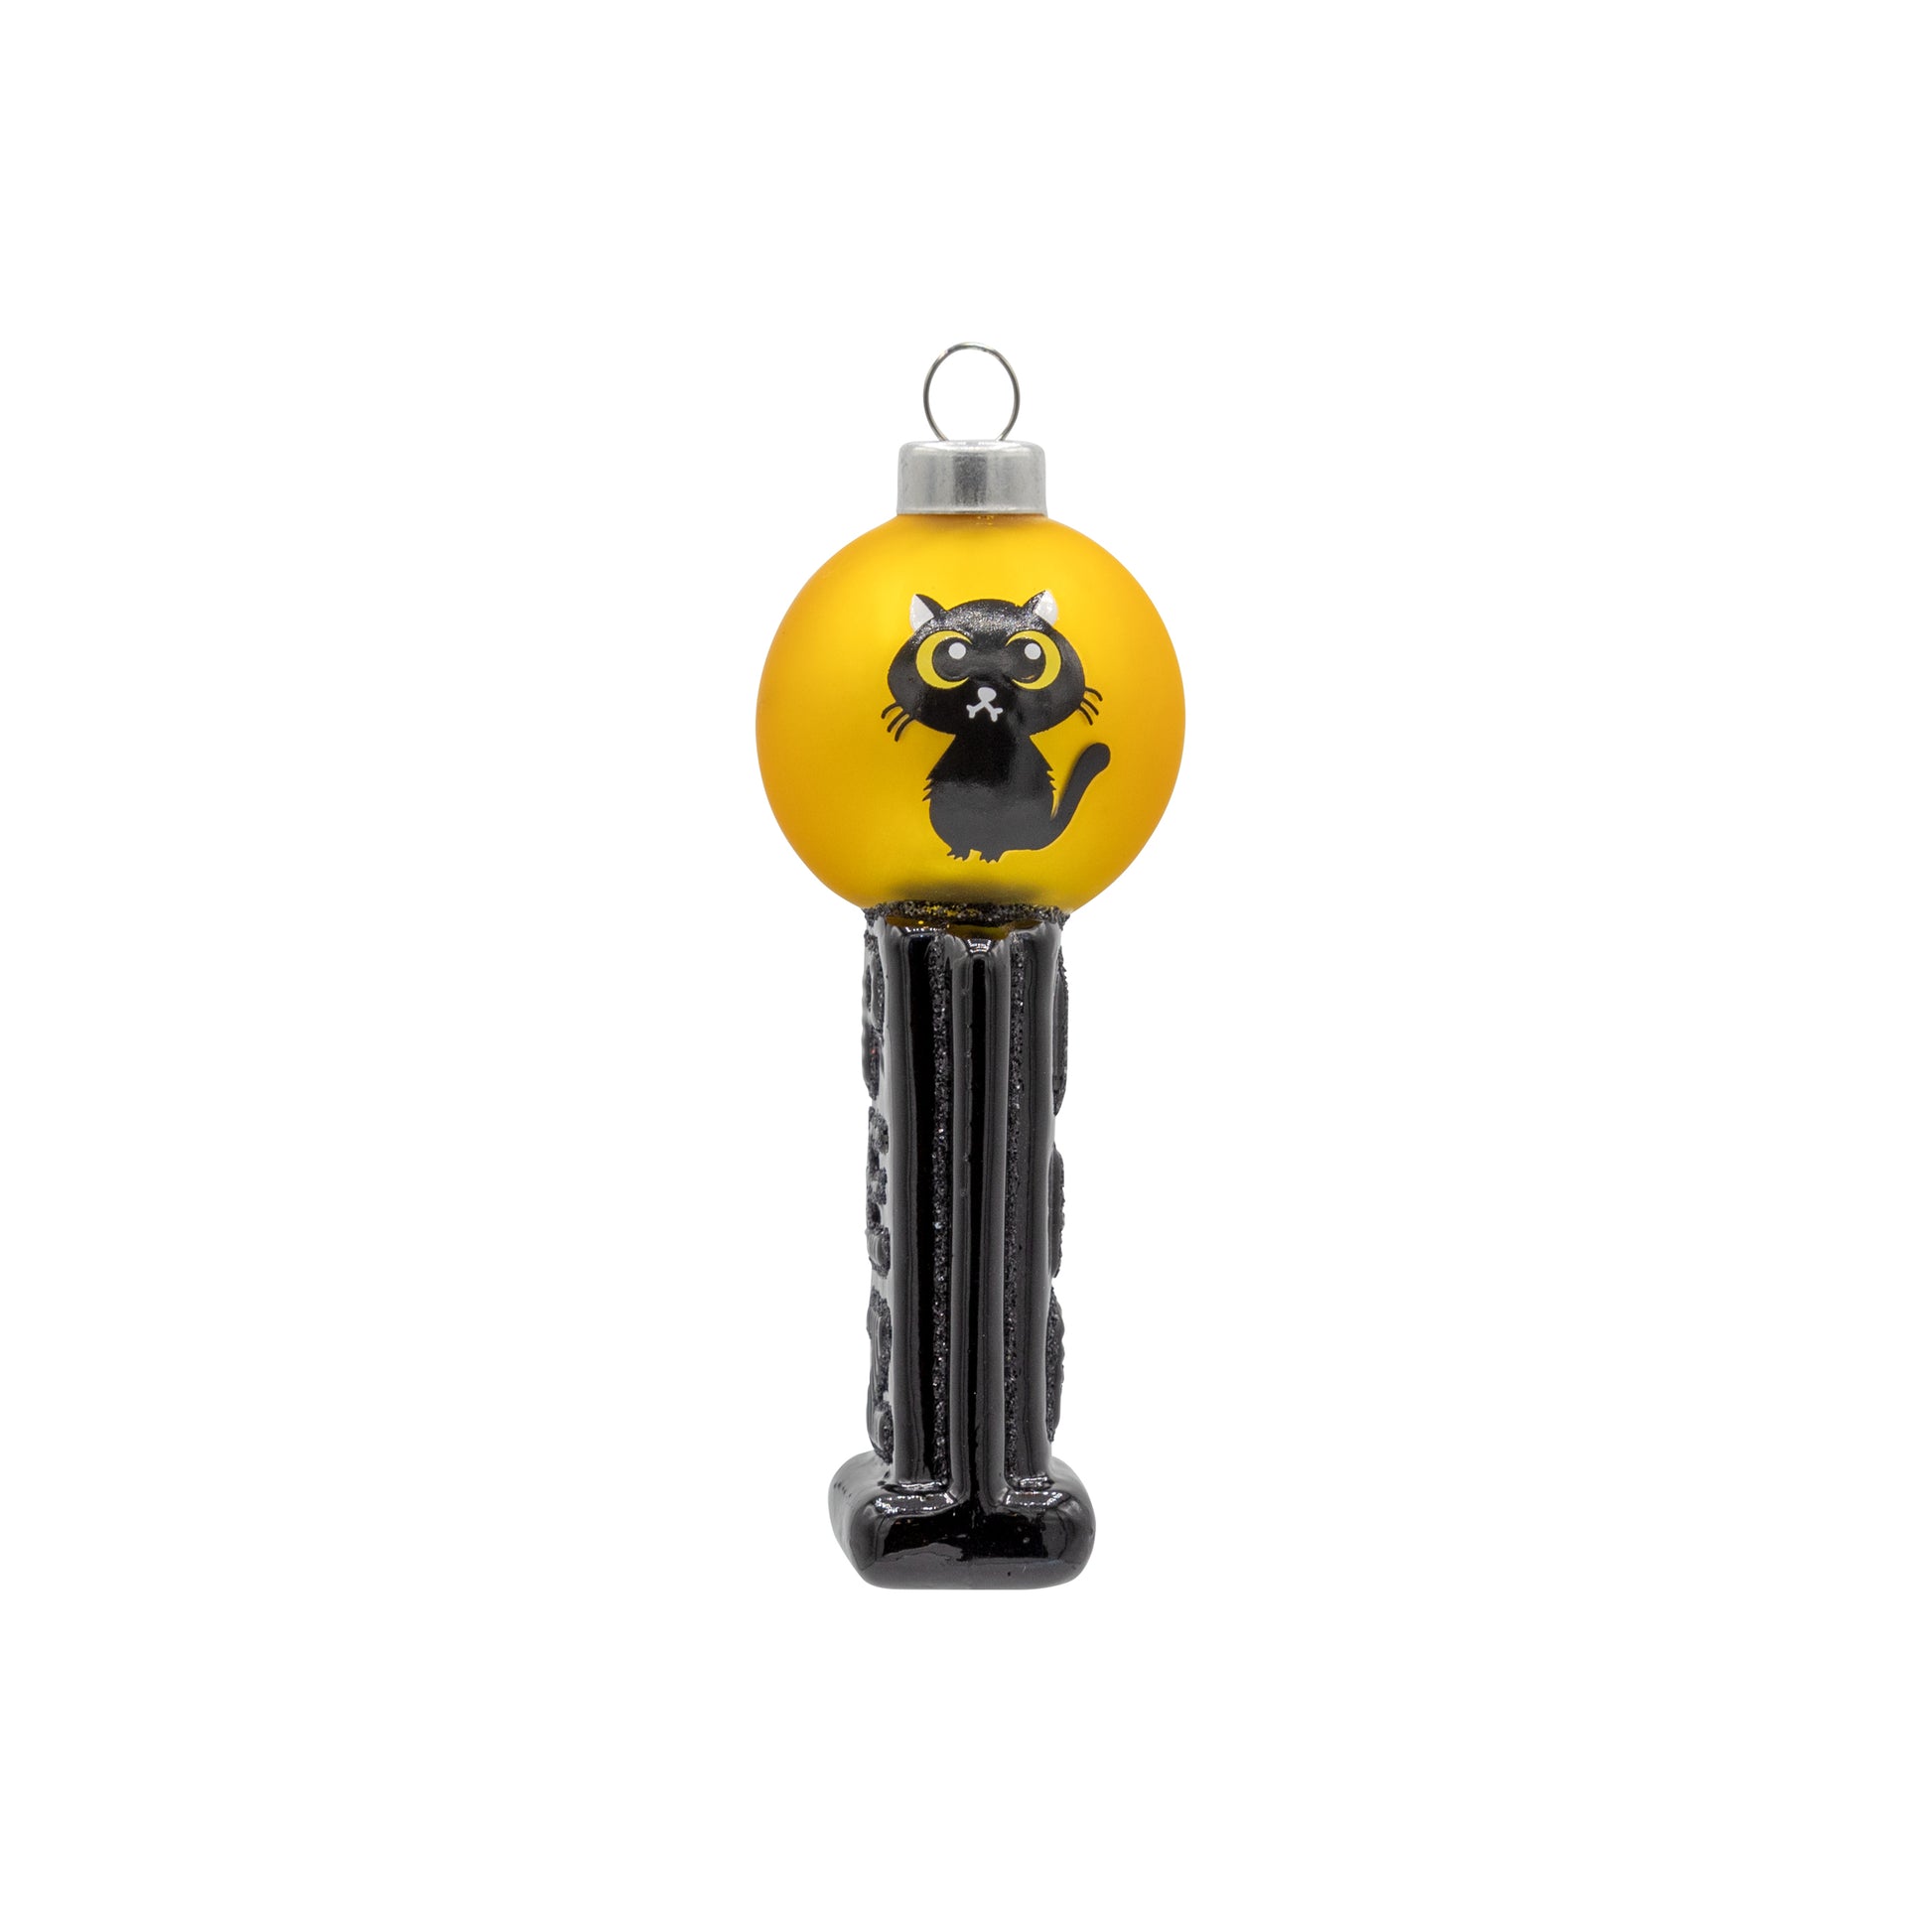 Front image - Black Cat Mini PEZ© Dispenser  - (PEZ candy ornament)